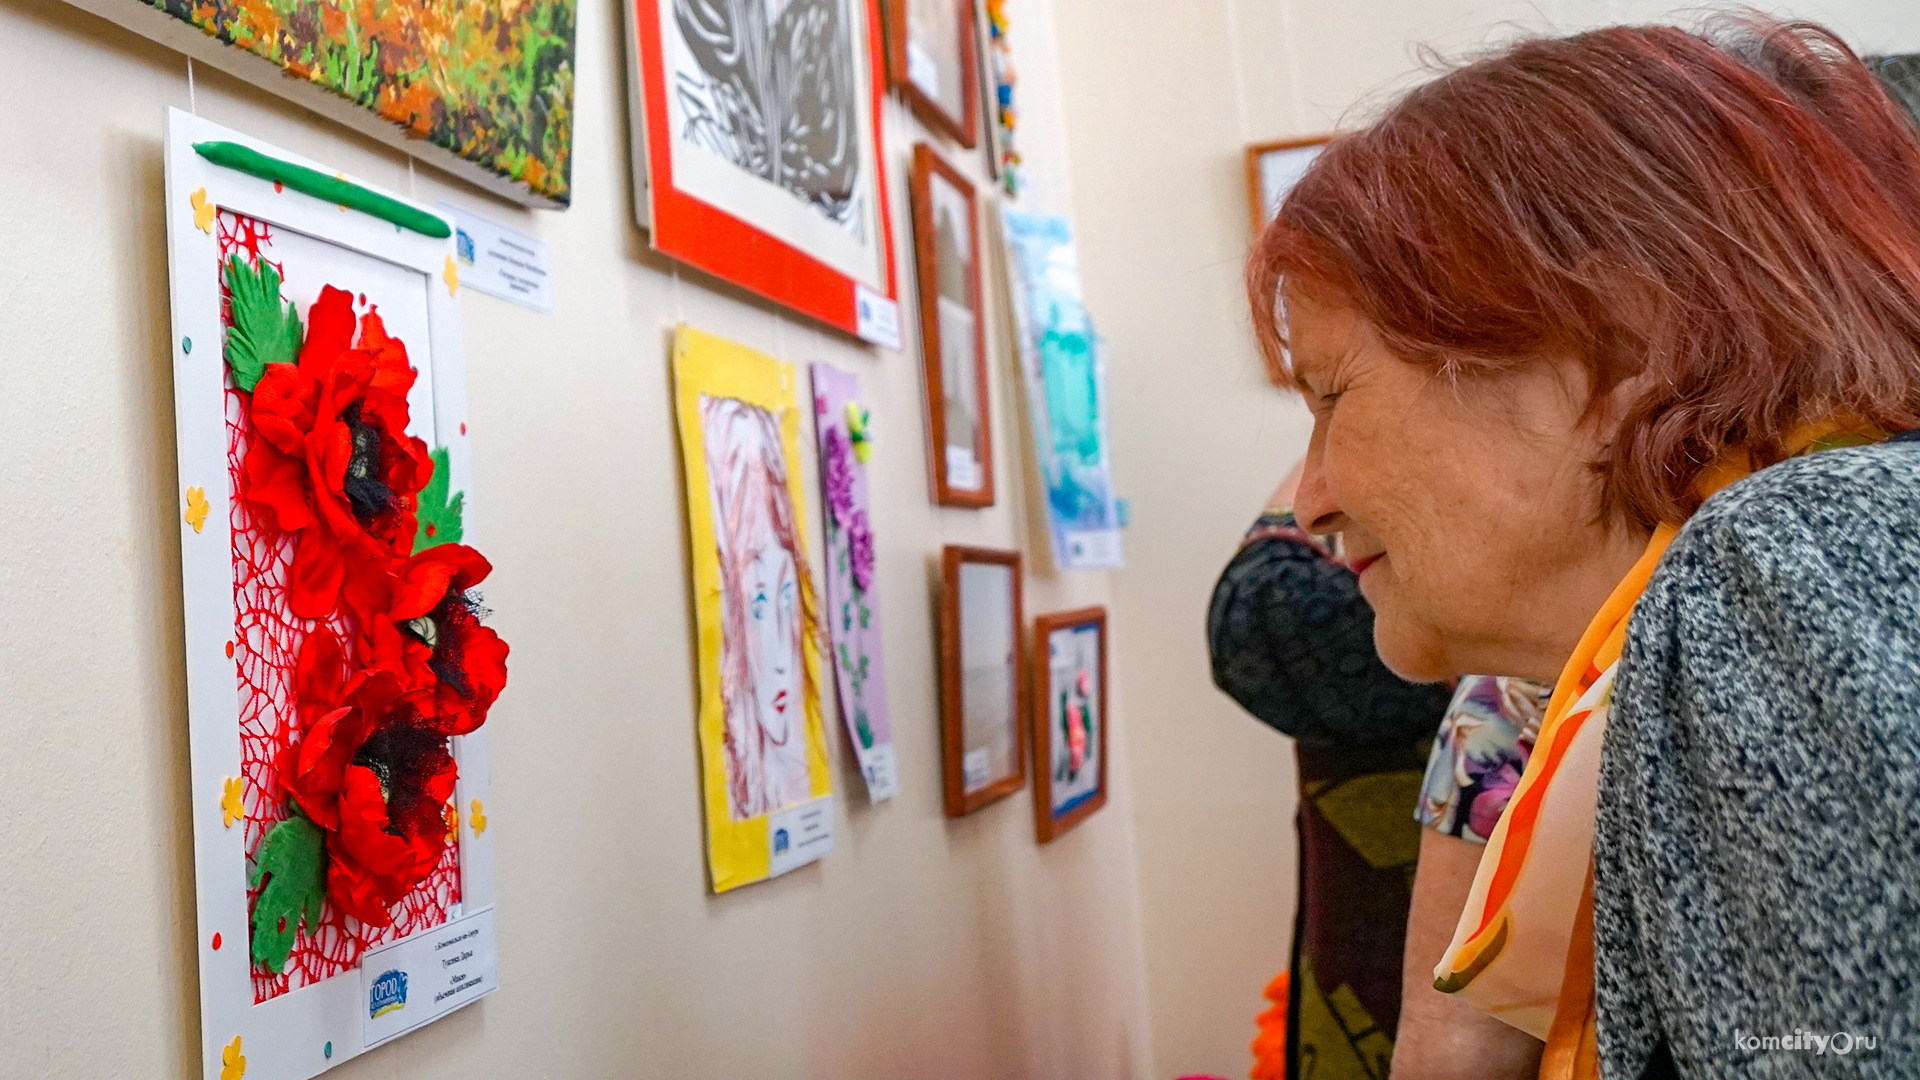 Традиционная выставка «Я радость нахожу в друзьях» открылась в Музее изобразительных искусств Комсомольска-на-Амуре